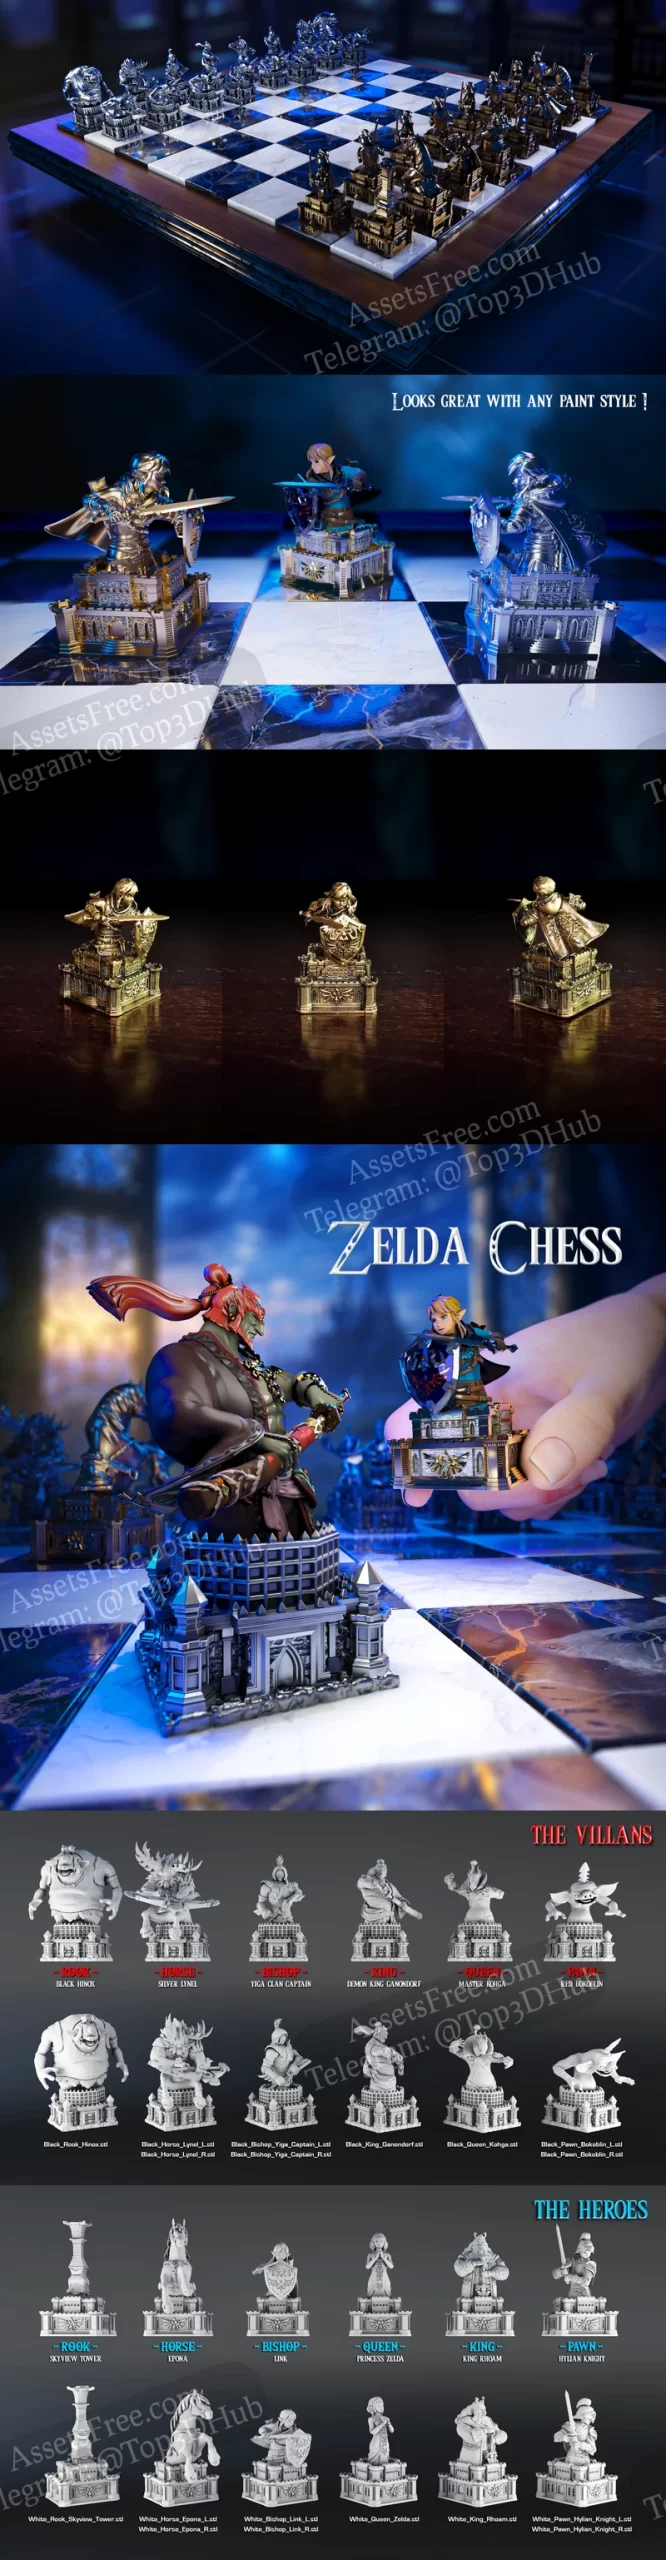 Legend of Zelda - Chess Set